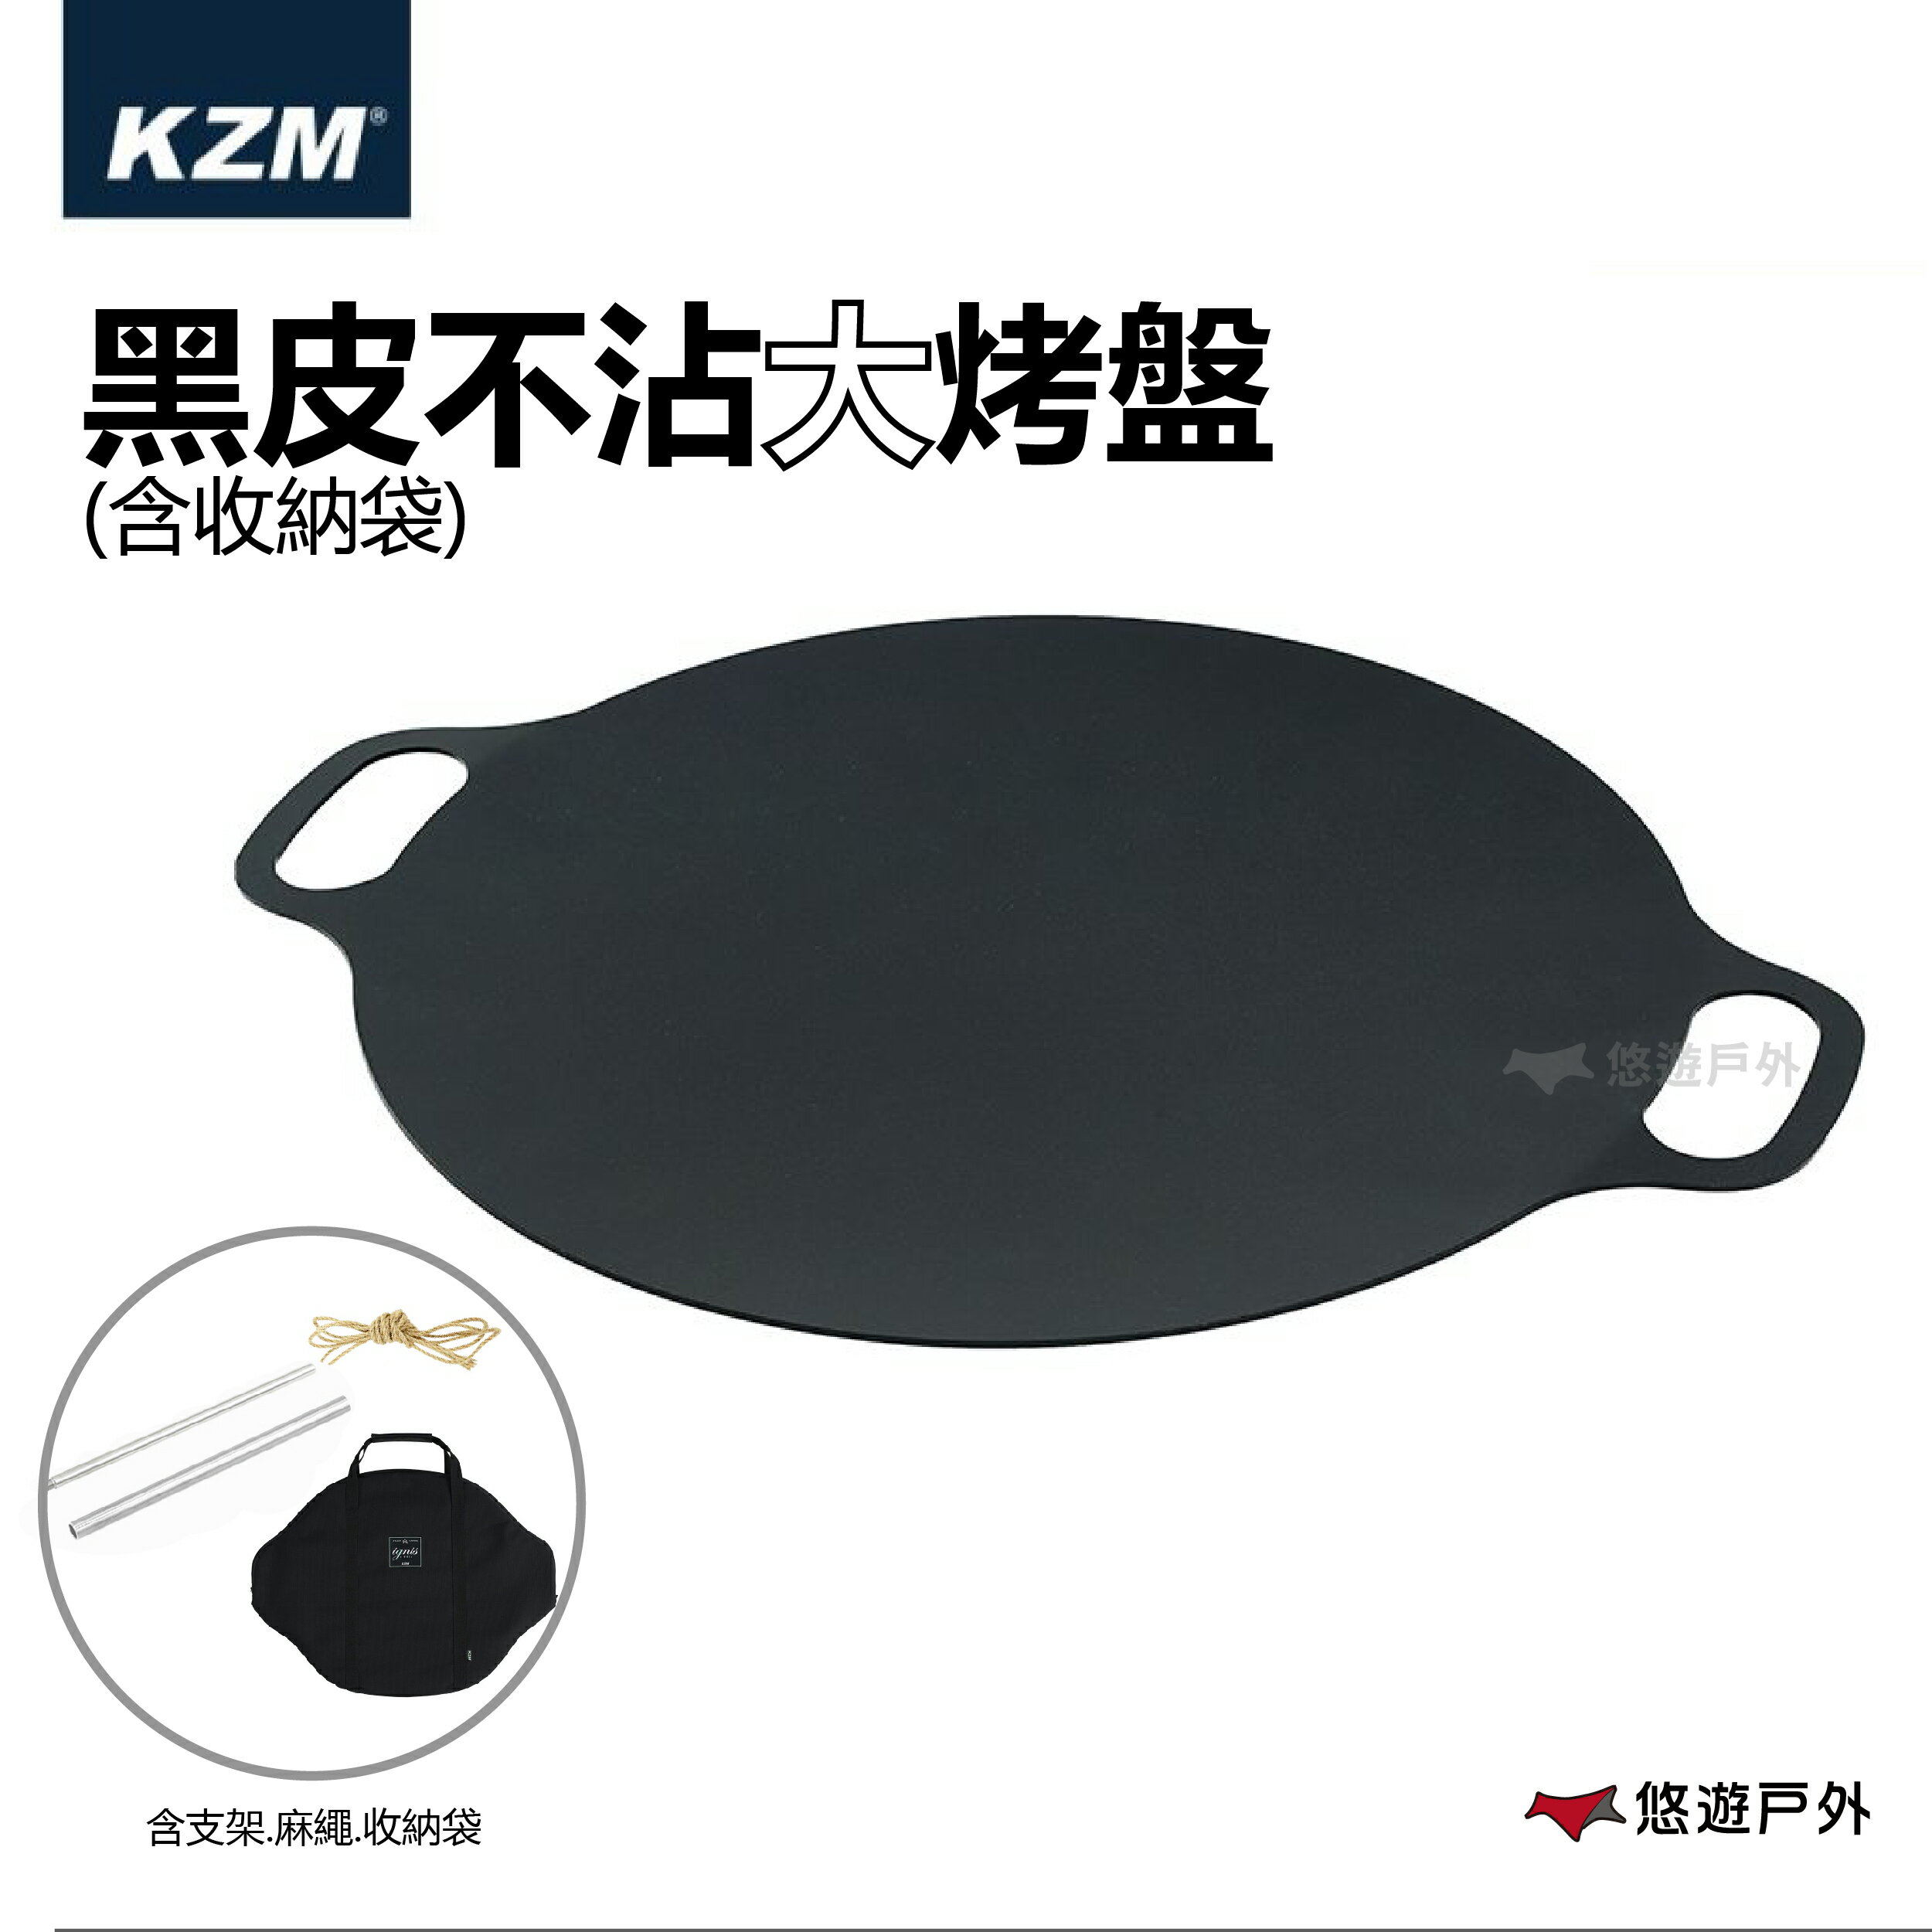 【KZM】 黑皮不沾大烤盤含收納袋 韓國烤盤 烤肉 戶外